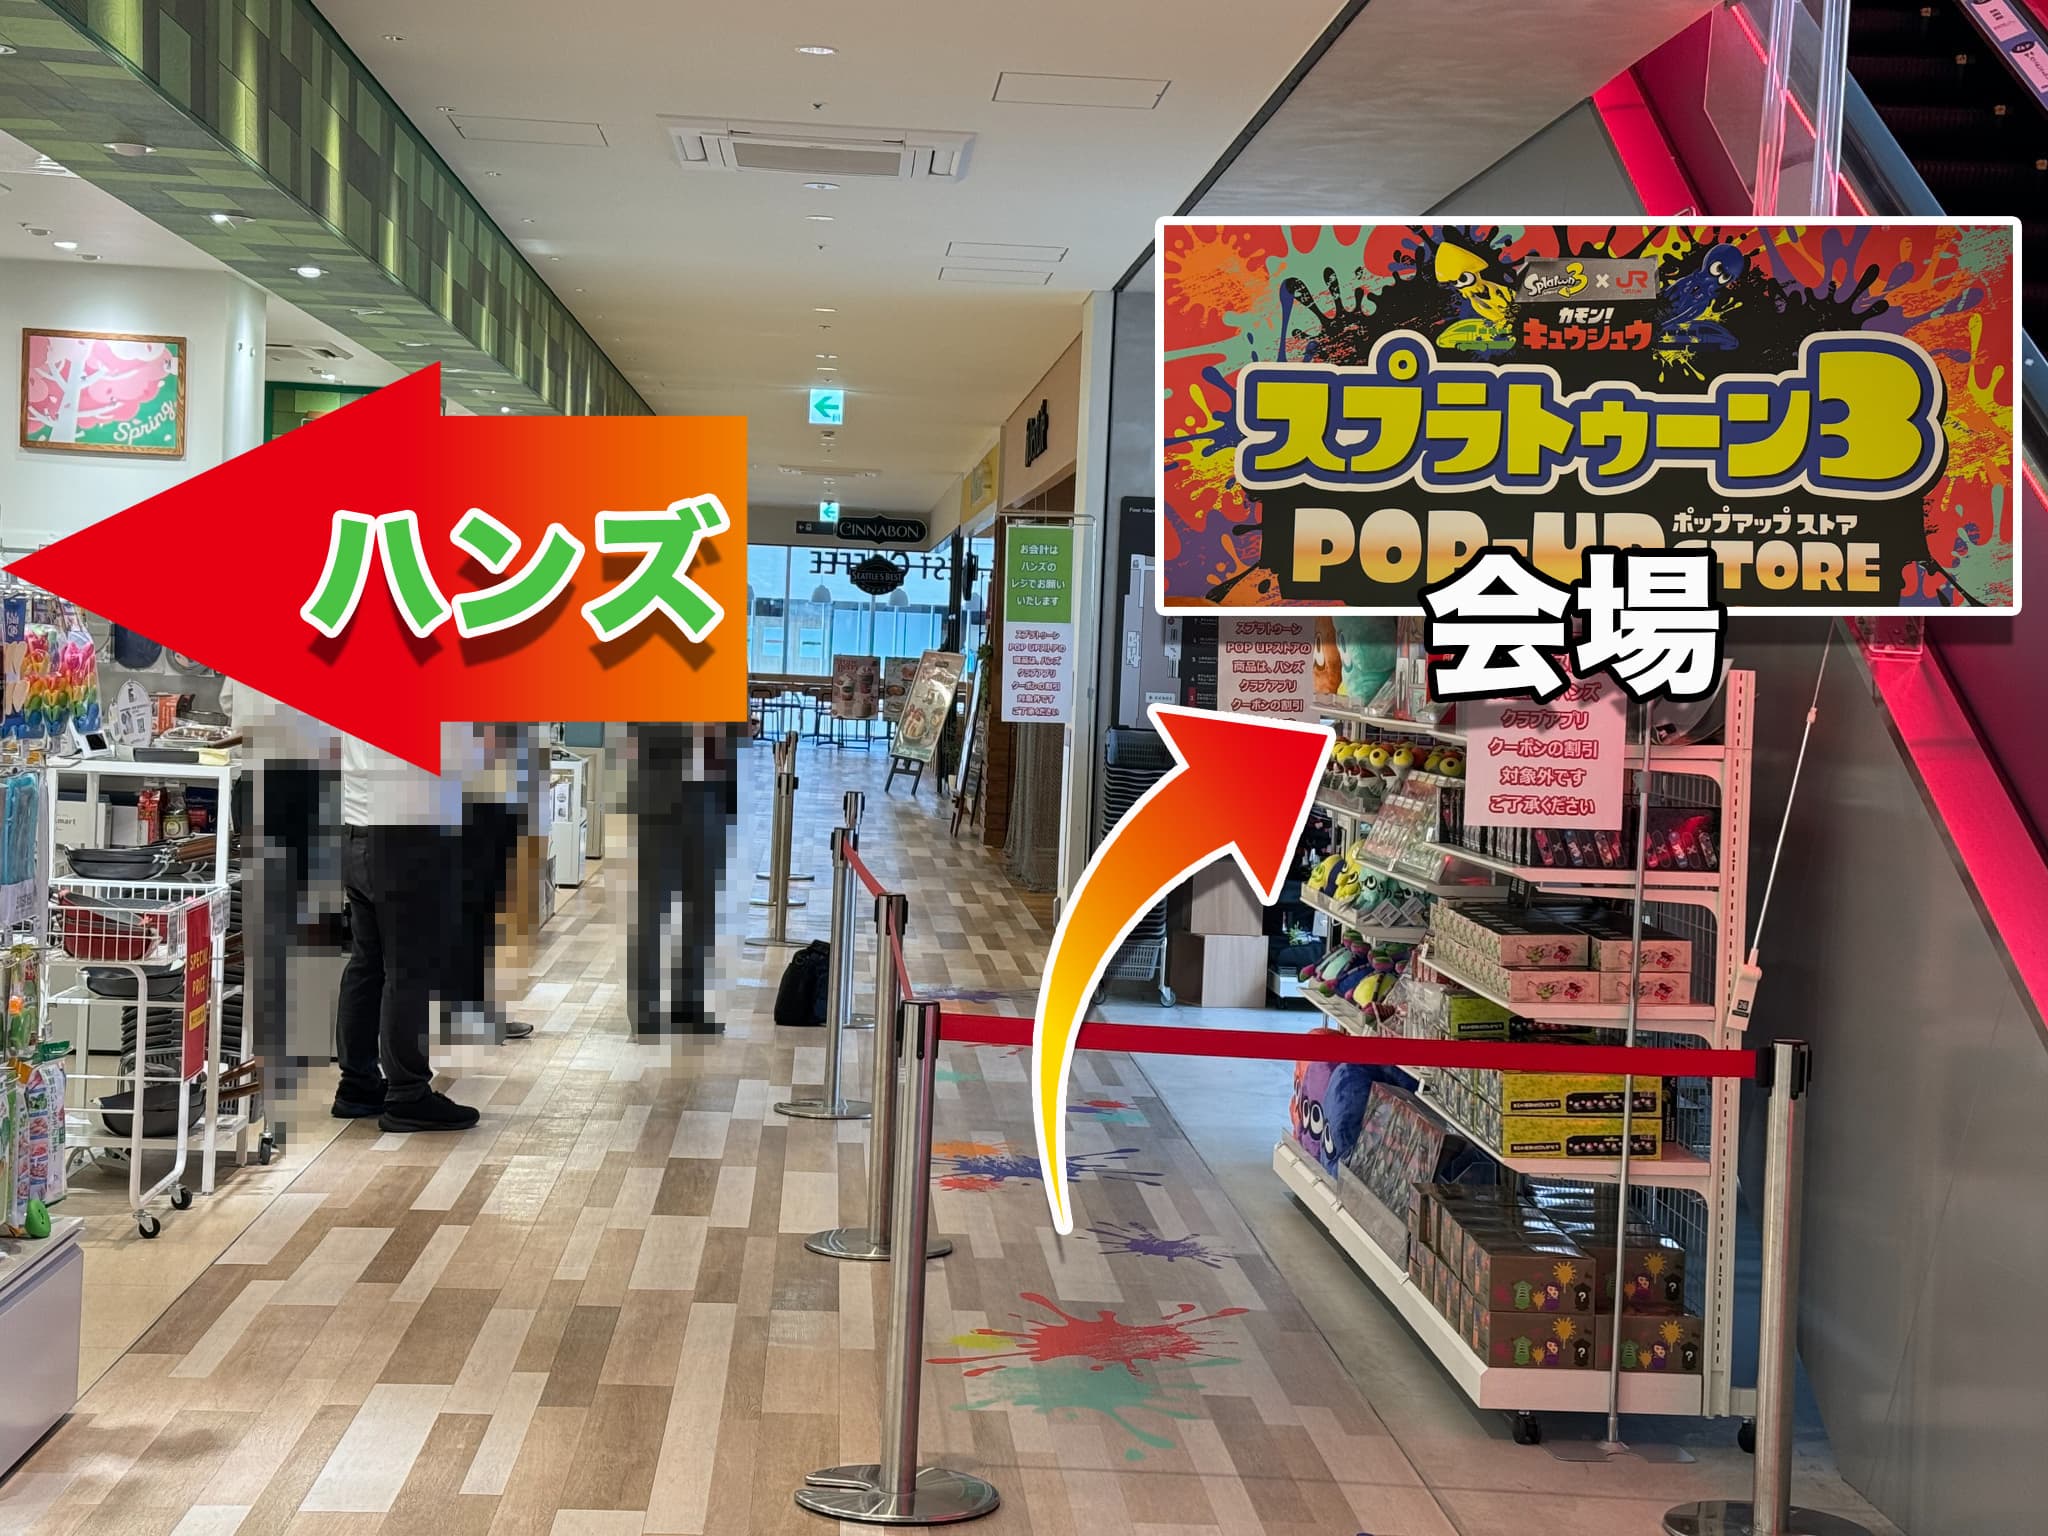 2024年1月9日（火）から開催している「Splatoon3×JR九州　カモン！キュウシュウ」の一環として、「カモン！キュウシュウ　スプラトゥーン３　POP UP STORE」が期間限定でオープンします！ 「カモン！キュウシュウ」オリジナルグッズのほか、Nintendo TOKYO公式グッズなどが販売されます 期間限定ショップ「スプラトゥーン3POP-UP STORE」OPEN！ ［期間］ 2024/4/5(金)～ 2024/5/12(日) ［時間］ 10:00～20:00 ［場所］ うみ館3階 ハンズ前 特設会場 【販売商品のご紹介】一部 今回のPOP UP STOREでは、Nintendo TOKYO/OSAKA/KYOTOでの取扱商品を販売。「キュ ウシュウラン」のイベントでも大人気だった「サーモンラン」グッズや、2月22日に配信開始と なった『スプラトゥーン3 エキスパンション・パス』 第2弾「サイド・オーダー」に登場する キャラクターのぬいぐるみも登場します! 【購入特典】 1回のお買い物で、4,000円以上お買い上げのお客さまに、『オリジナル缶バッジ』または、『カモン！キュウシュウオリジナルステッカー』がプレゼント！ ※プレゼントは先着順です。なくなり次第終了となります。 ※プレゼントはどちらか１つをランダムでお渡しします。 まとめ スプラトゥーンファンは必見です！ ※その他、アミュプラザみやざき館内にフォトスポットも登場します 目玉は「カモン！キュウシュウ」オリジナルグッズですね！